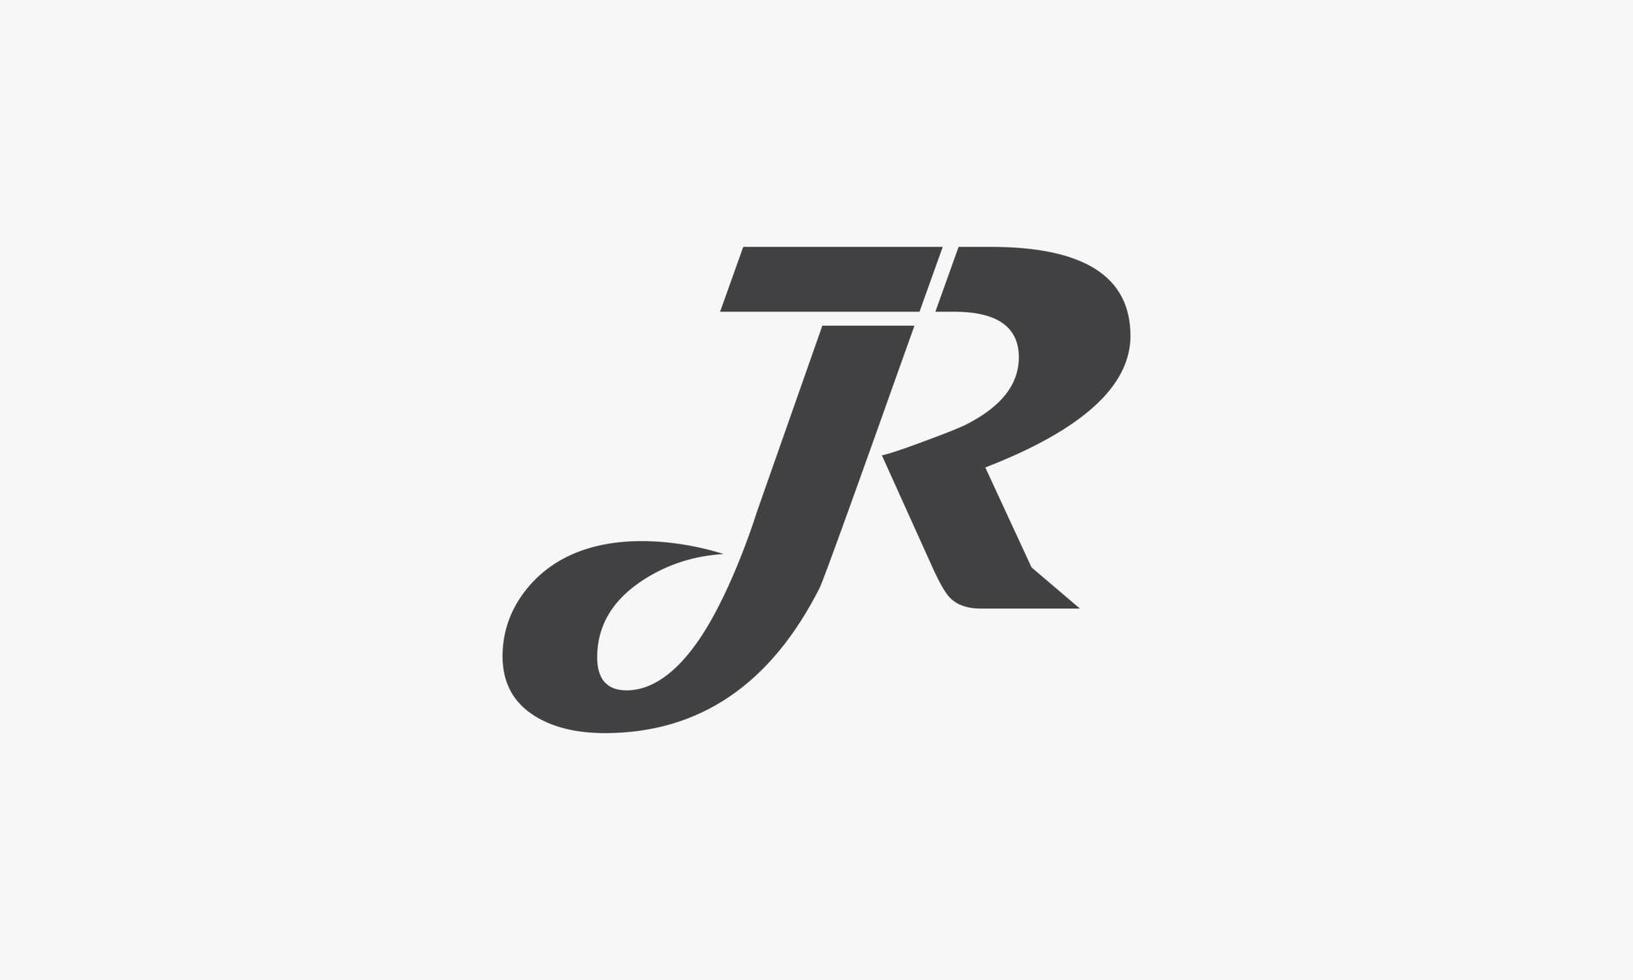 JR letter logo isolated on white background. vector